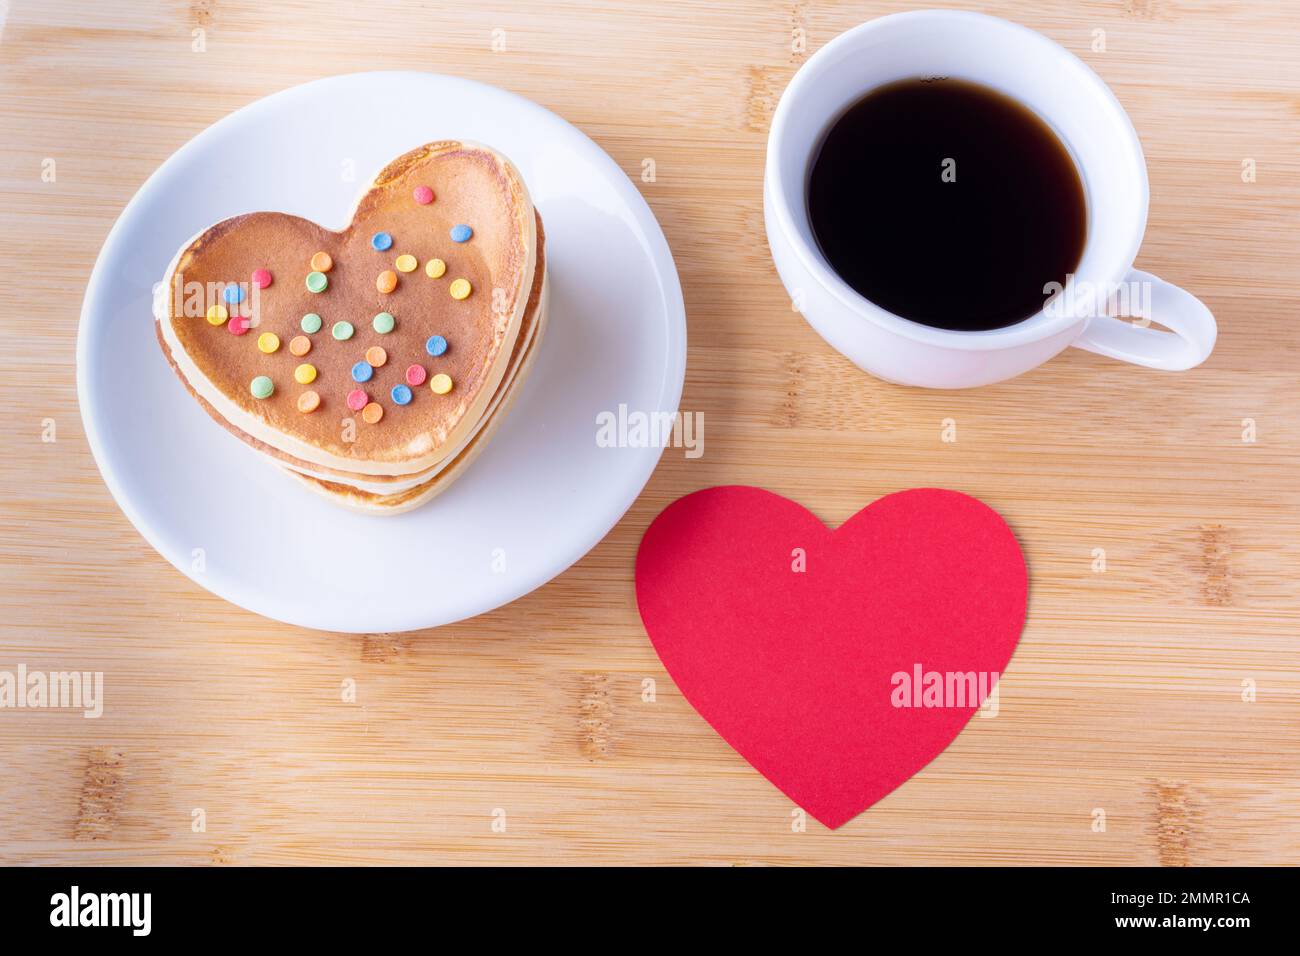 Kreatives Frühstück zum Valentinstag. Hausgemachte herzförmige Pfannkuchen mit Zuckerdekoration auf weißem Teller, Gabel, Becher mit Kaffee oder Kakao und rotem Saum Stockfoto